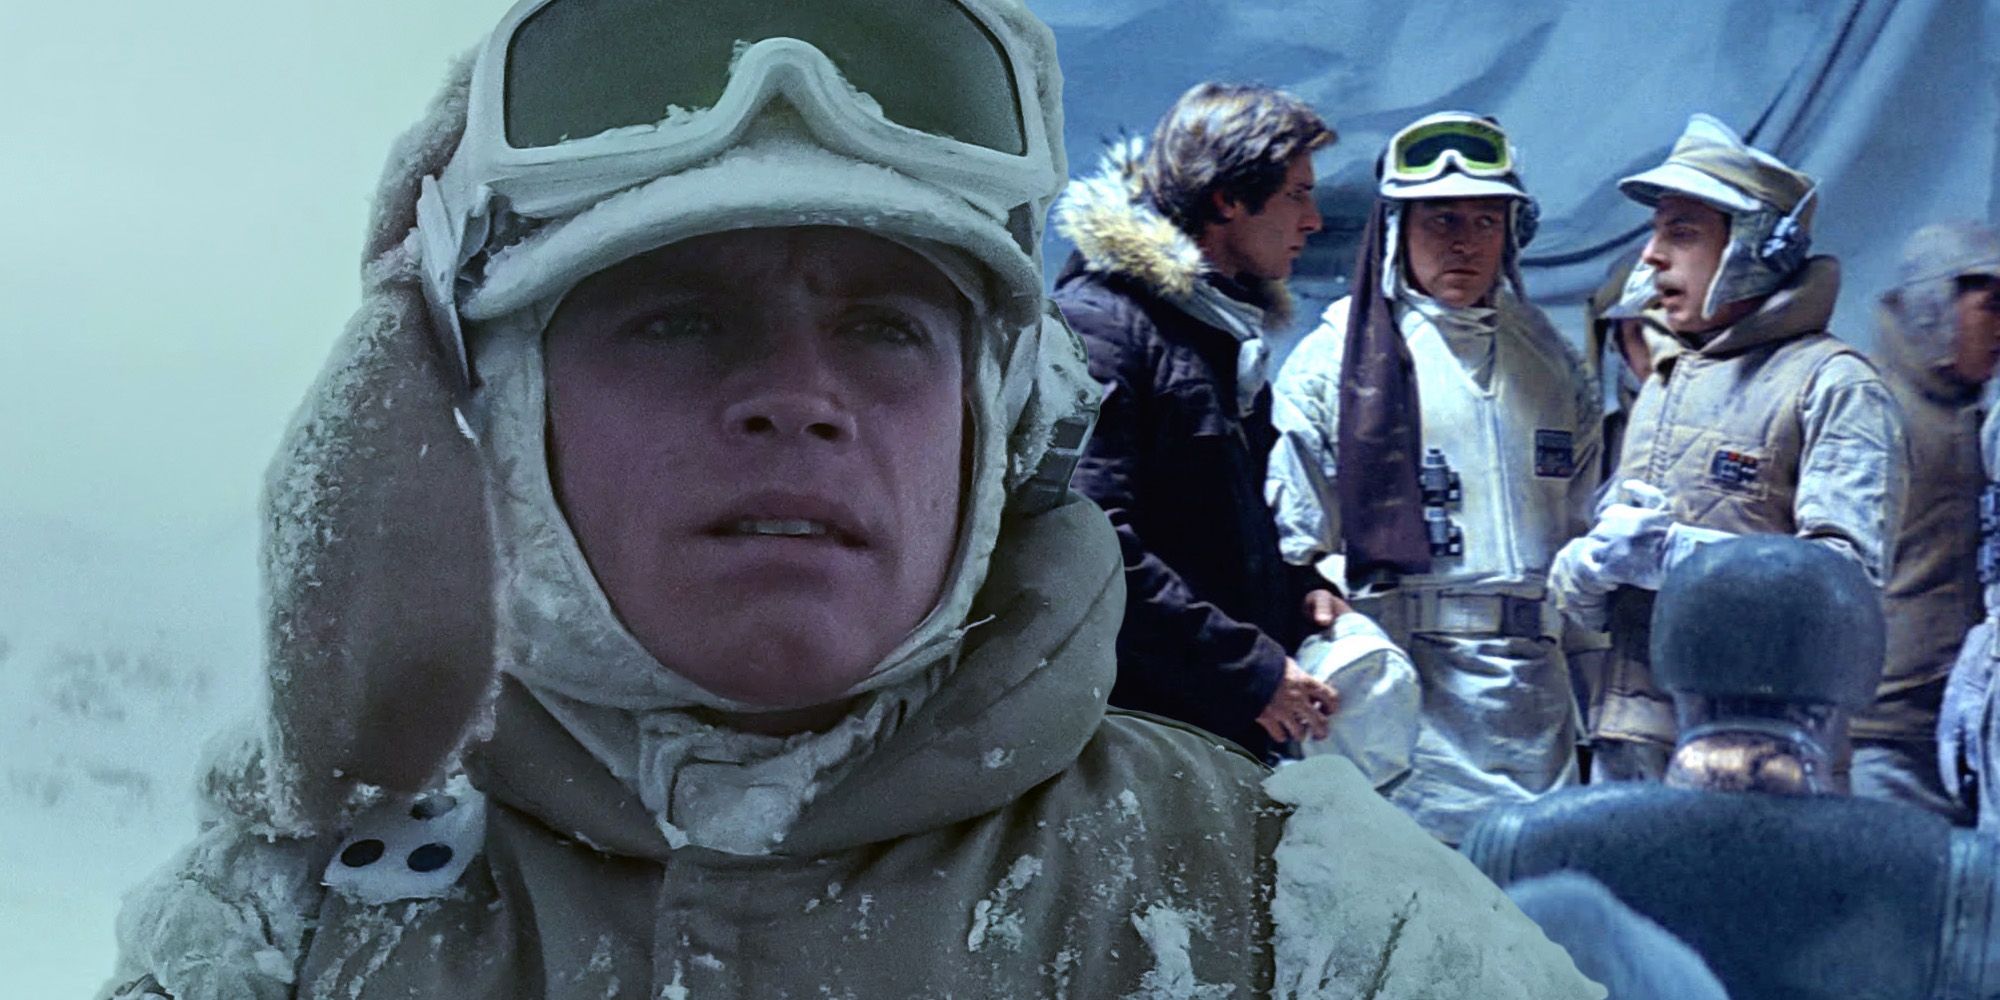 Luke skywalker Mark Hamill Star Wars The Empire strikes back rebels